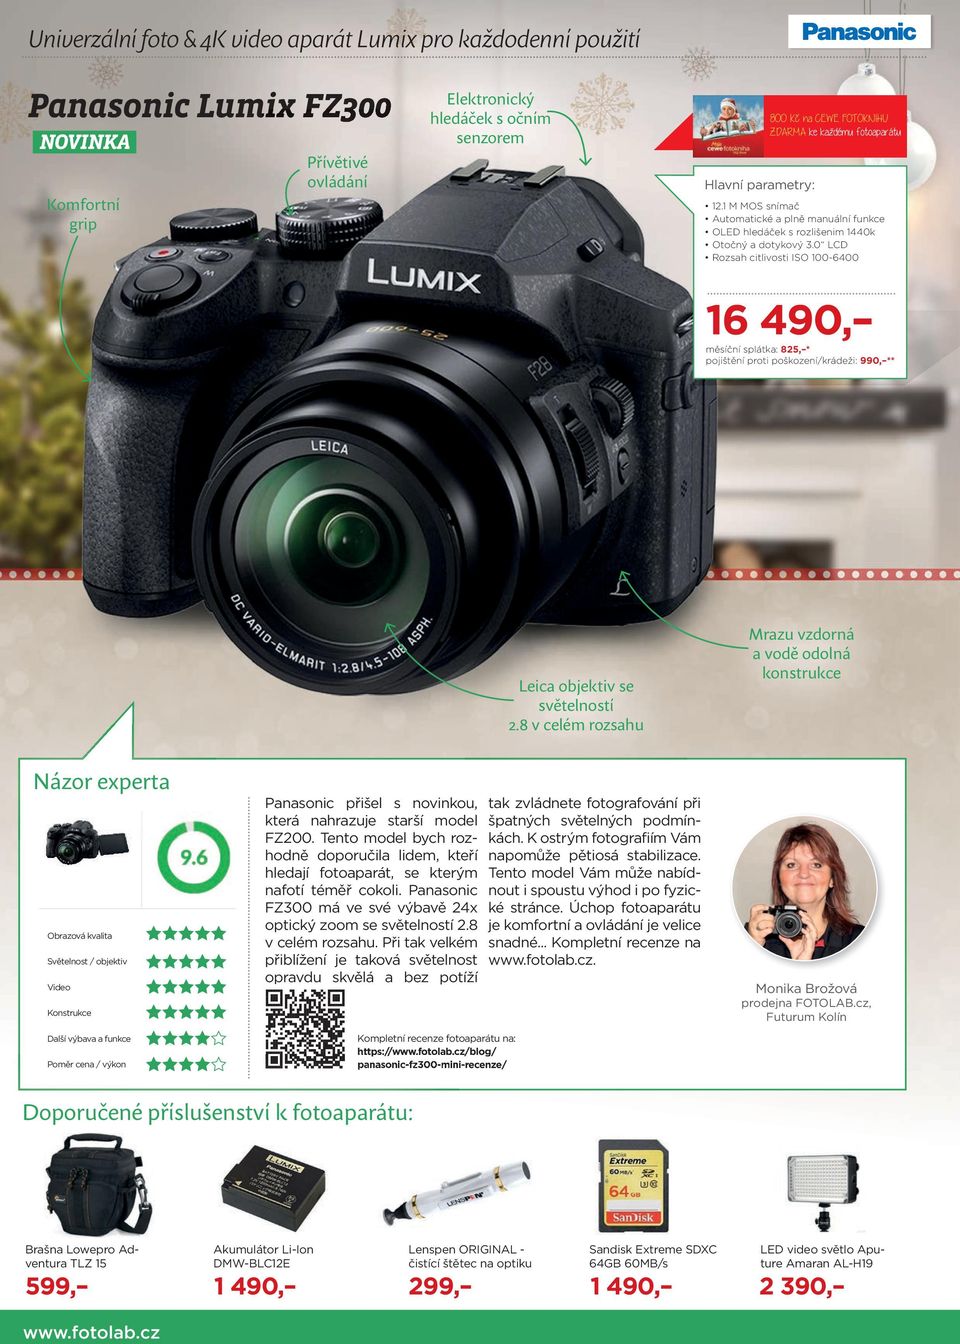 0 LCD Rozsah citlivosti ISO 100-6400 16 490, měsíční splátka: 825, * pojištění proti poškození/krádeži: 990, ** Leica objektiv se světelností 2.